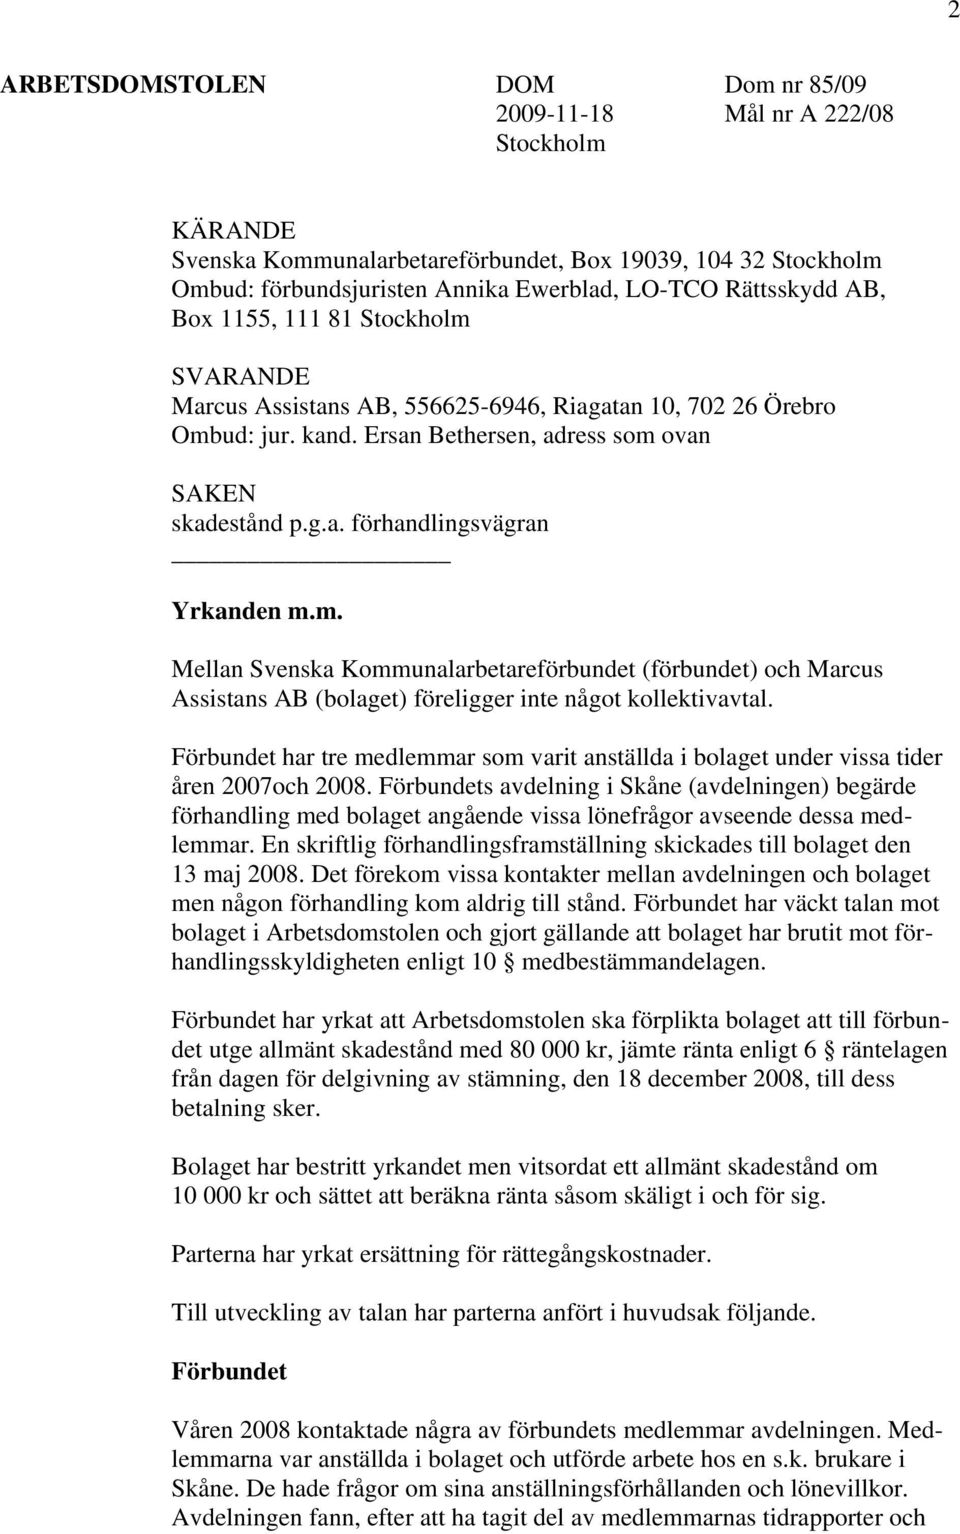 m. Mellan Svenska Kommunalarbetareförbundet (förbundet) och Marcus Assistans AB (bolaget) föreligger inte något kollektivavtal.